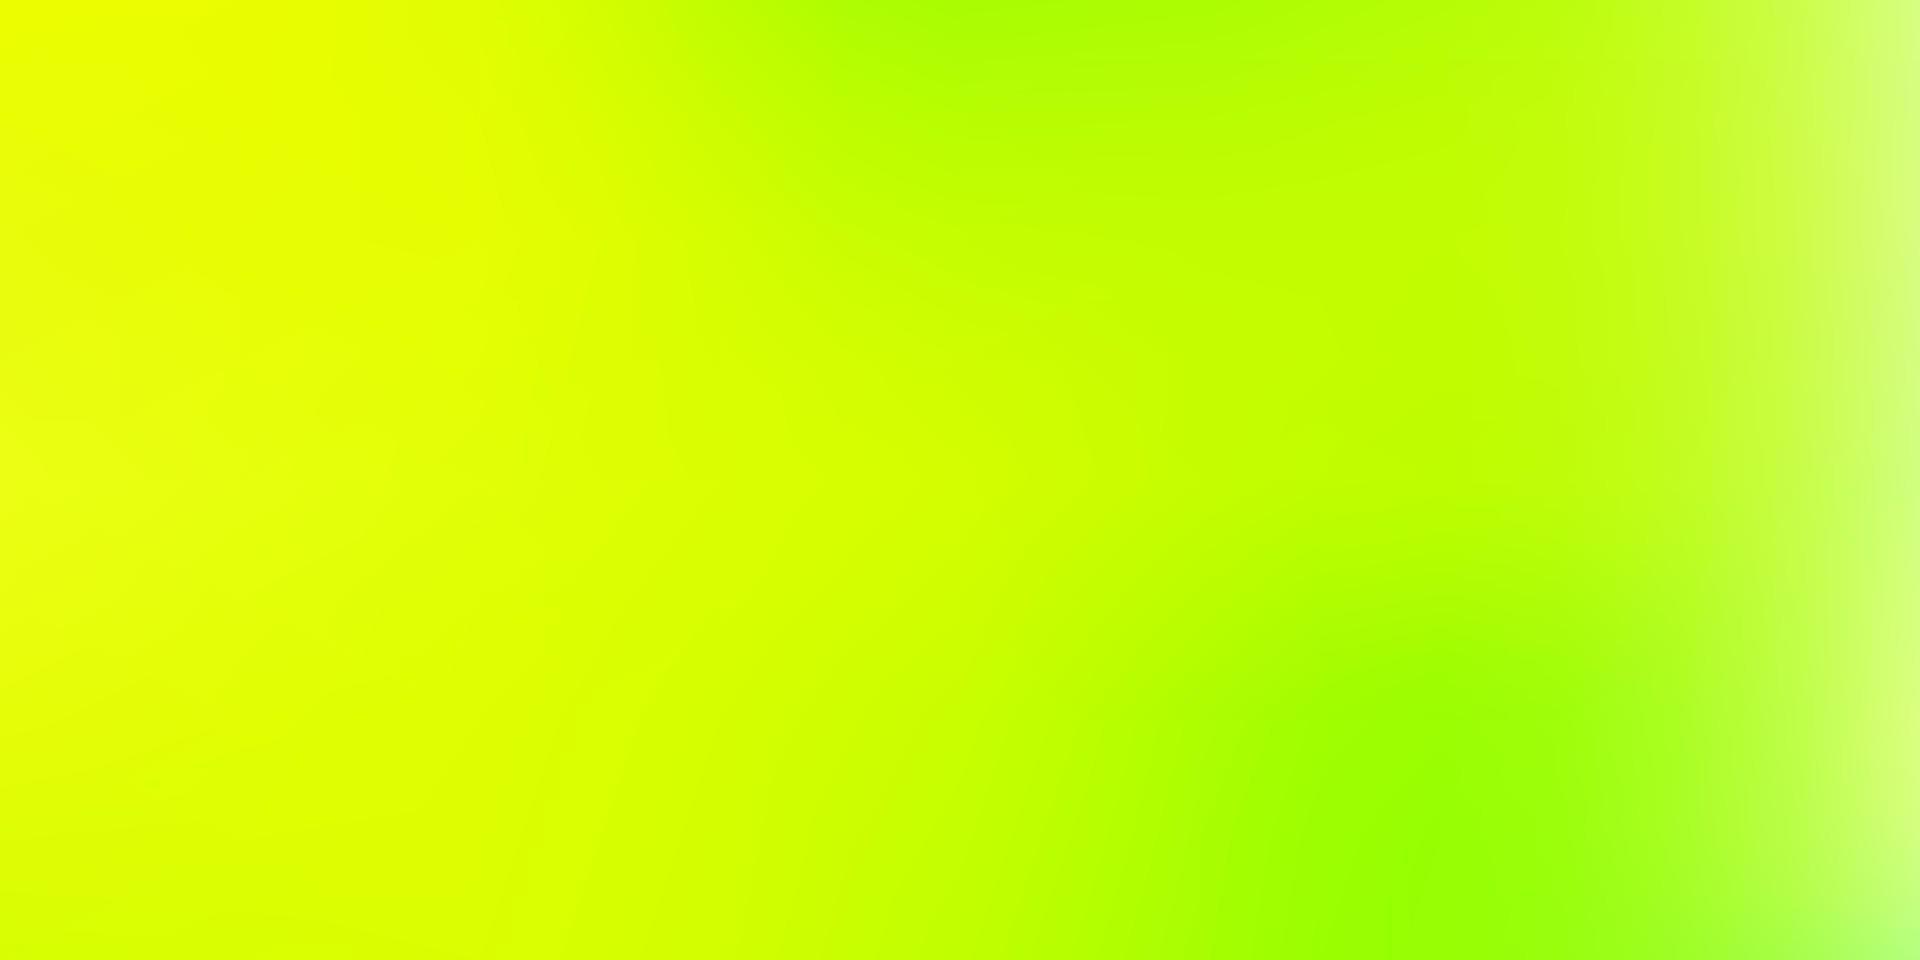 Fondo de desenfoque de vector verde claro, amarillo.